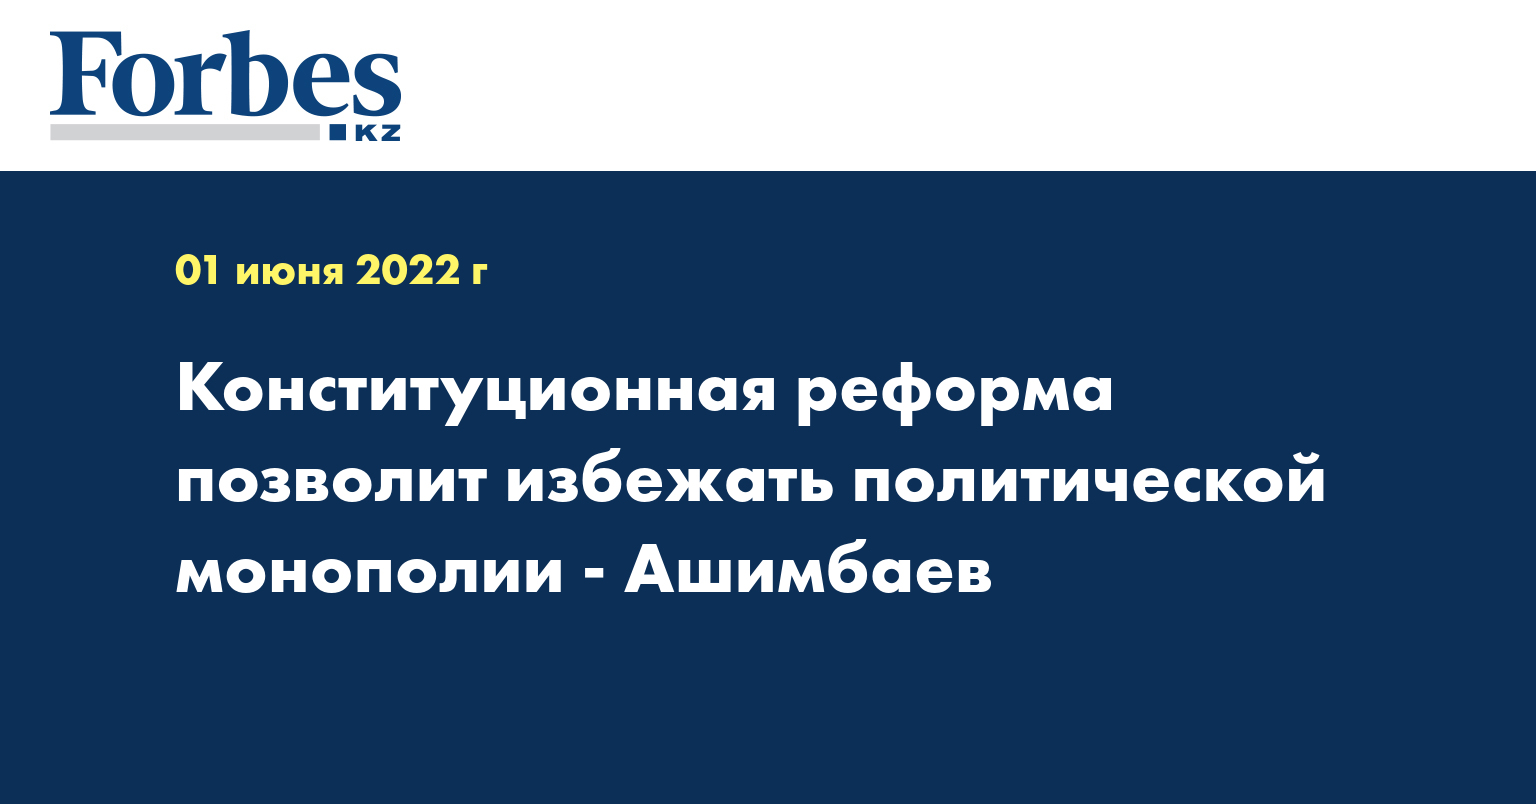 Конституционная реформа позволит избежать политической монополии - Ашимбаев